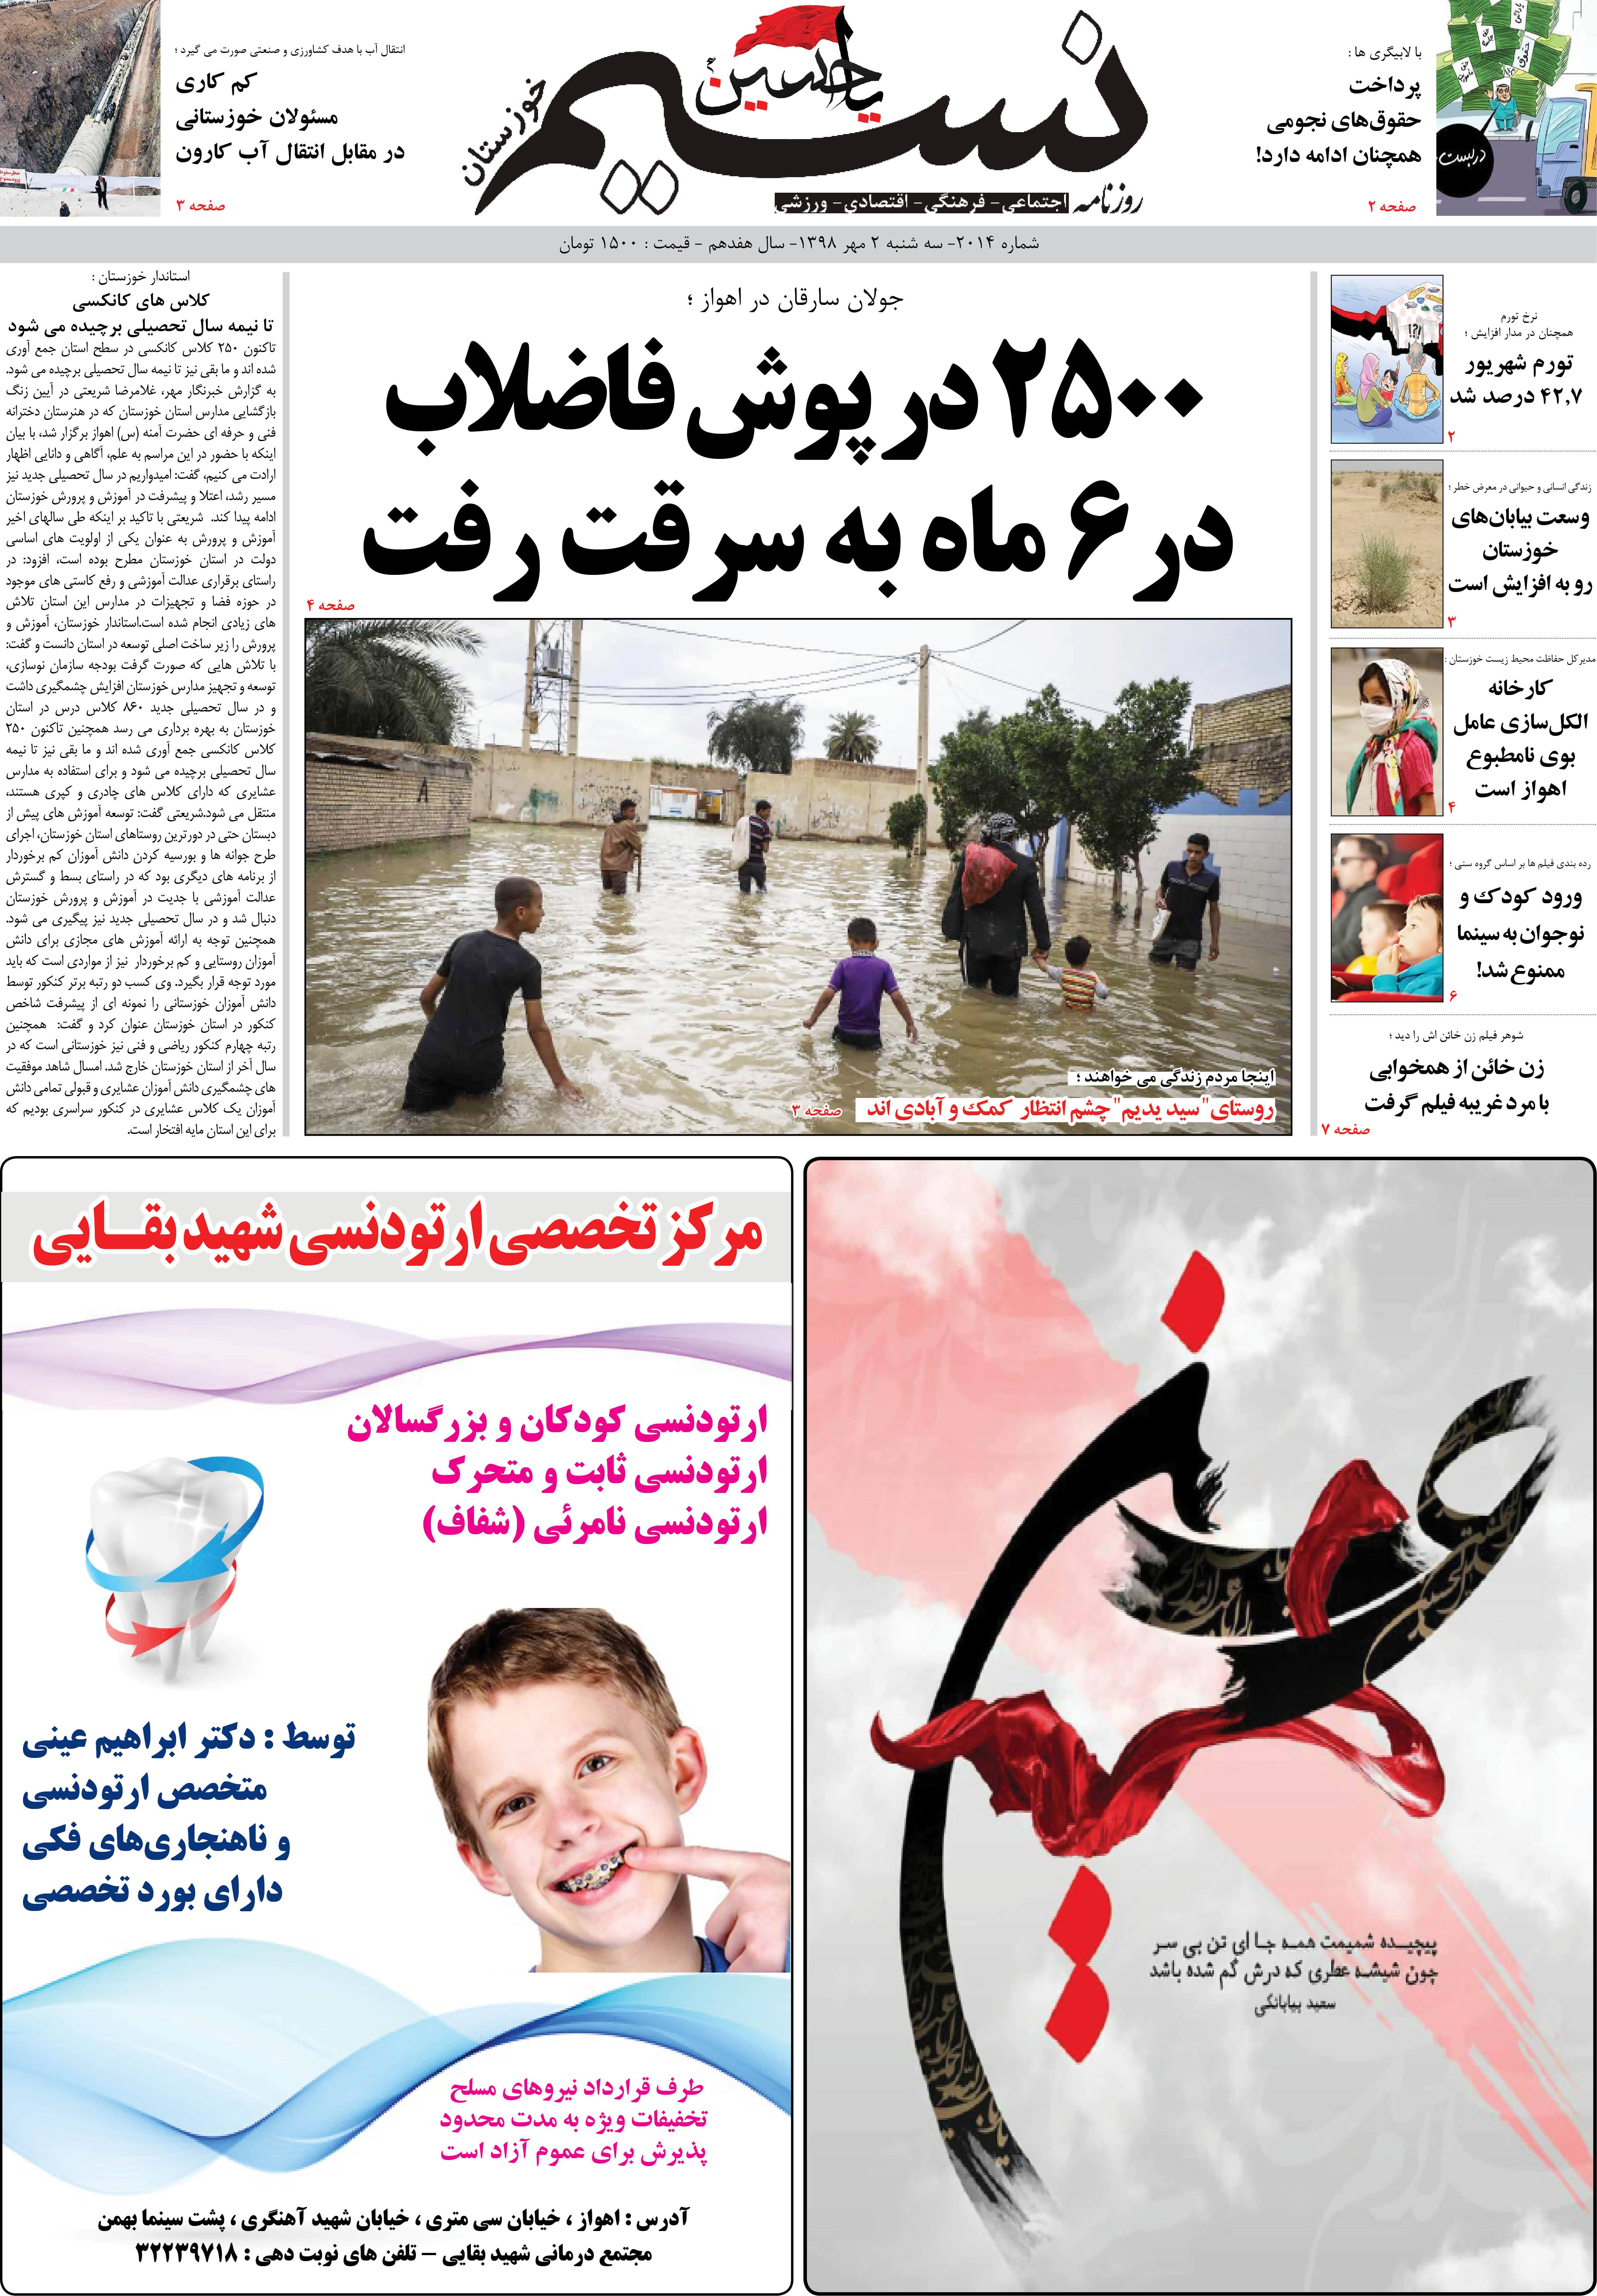 صفحه اصلی روزنامه نسیم شماره 2014 